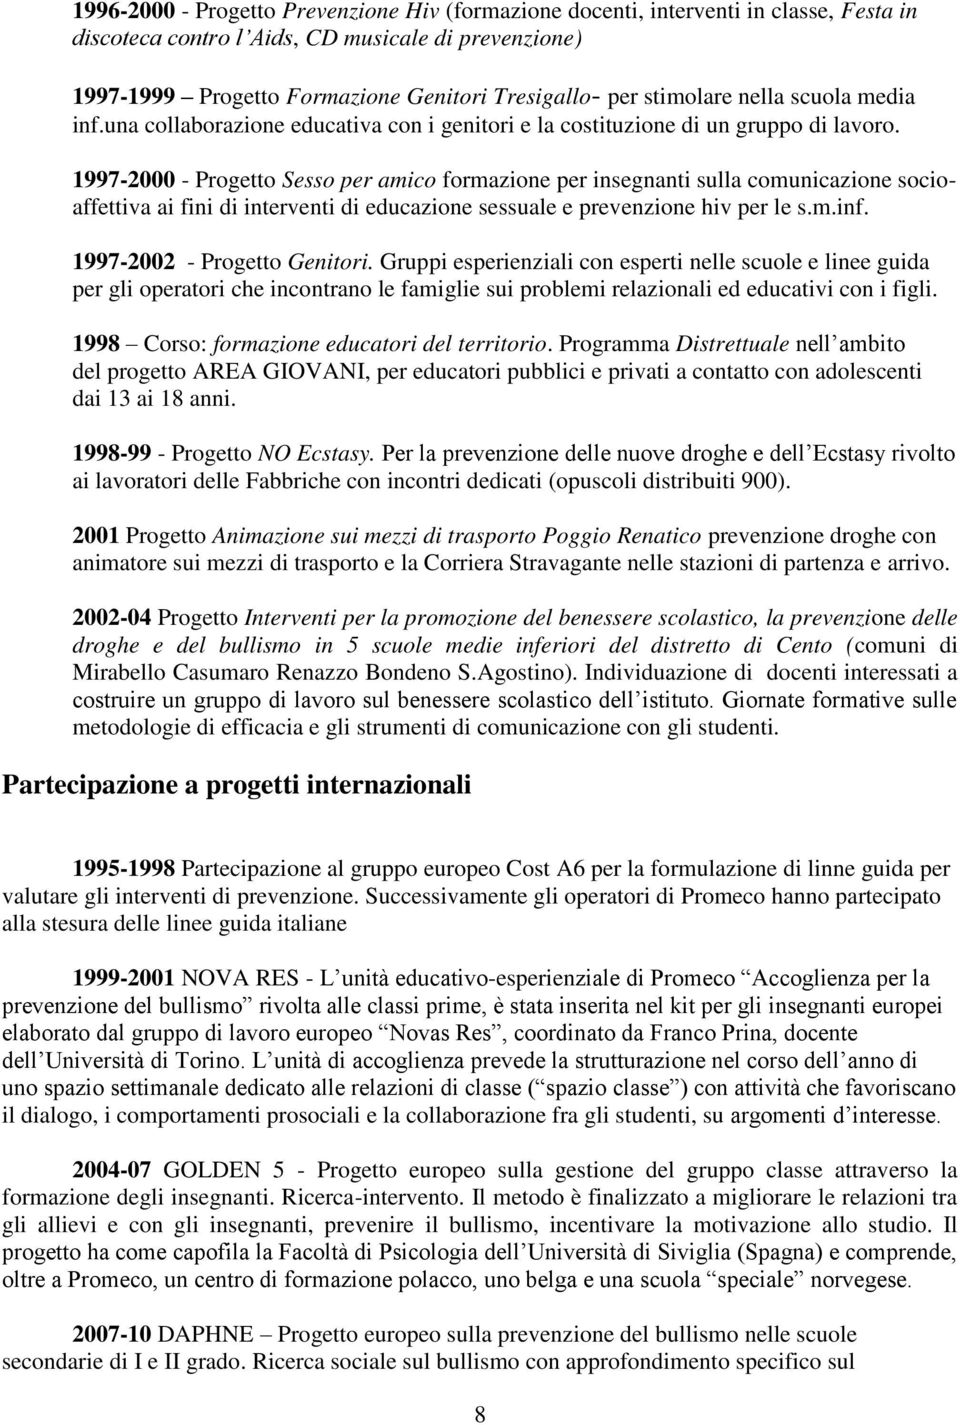 1997-2000 - Progetto Sesso per amico formazione per insegnanti sulla comunicazione socioaffettiva ai fini di interventi di educazione sessuale e prevenzione hiv per le s.m.inf.